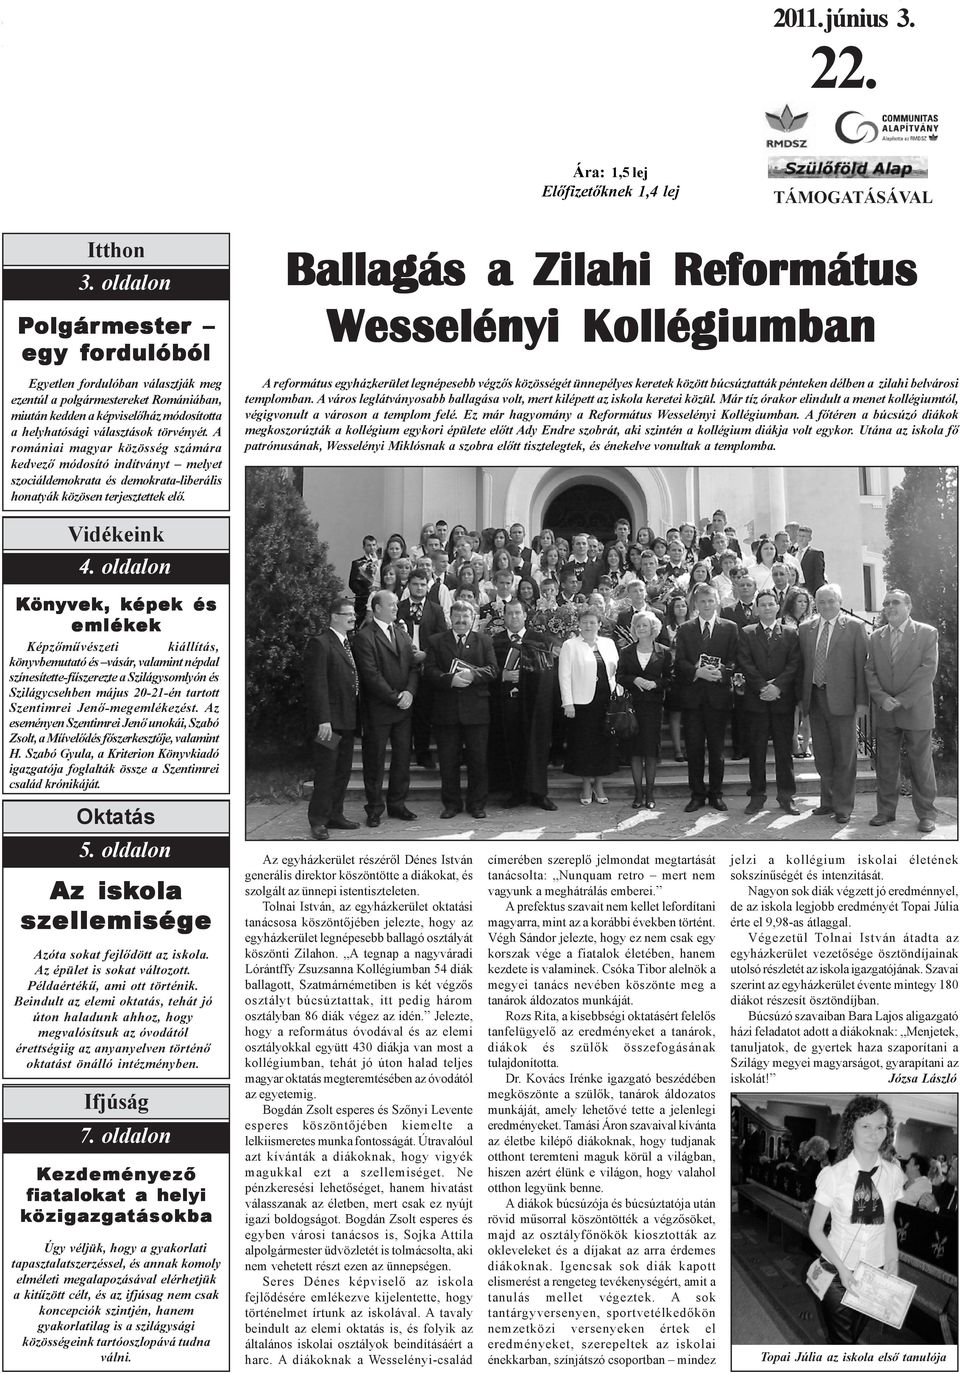 A romániai magyar közösség számára kedvezõ módosító indítványt melyet szociáldemokrata és demokrata-liberális honatyák közösen terjesztettek elõ.